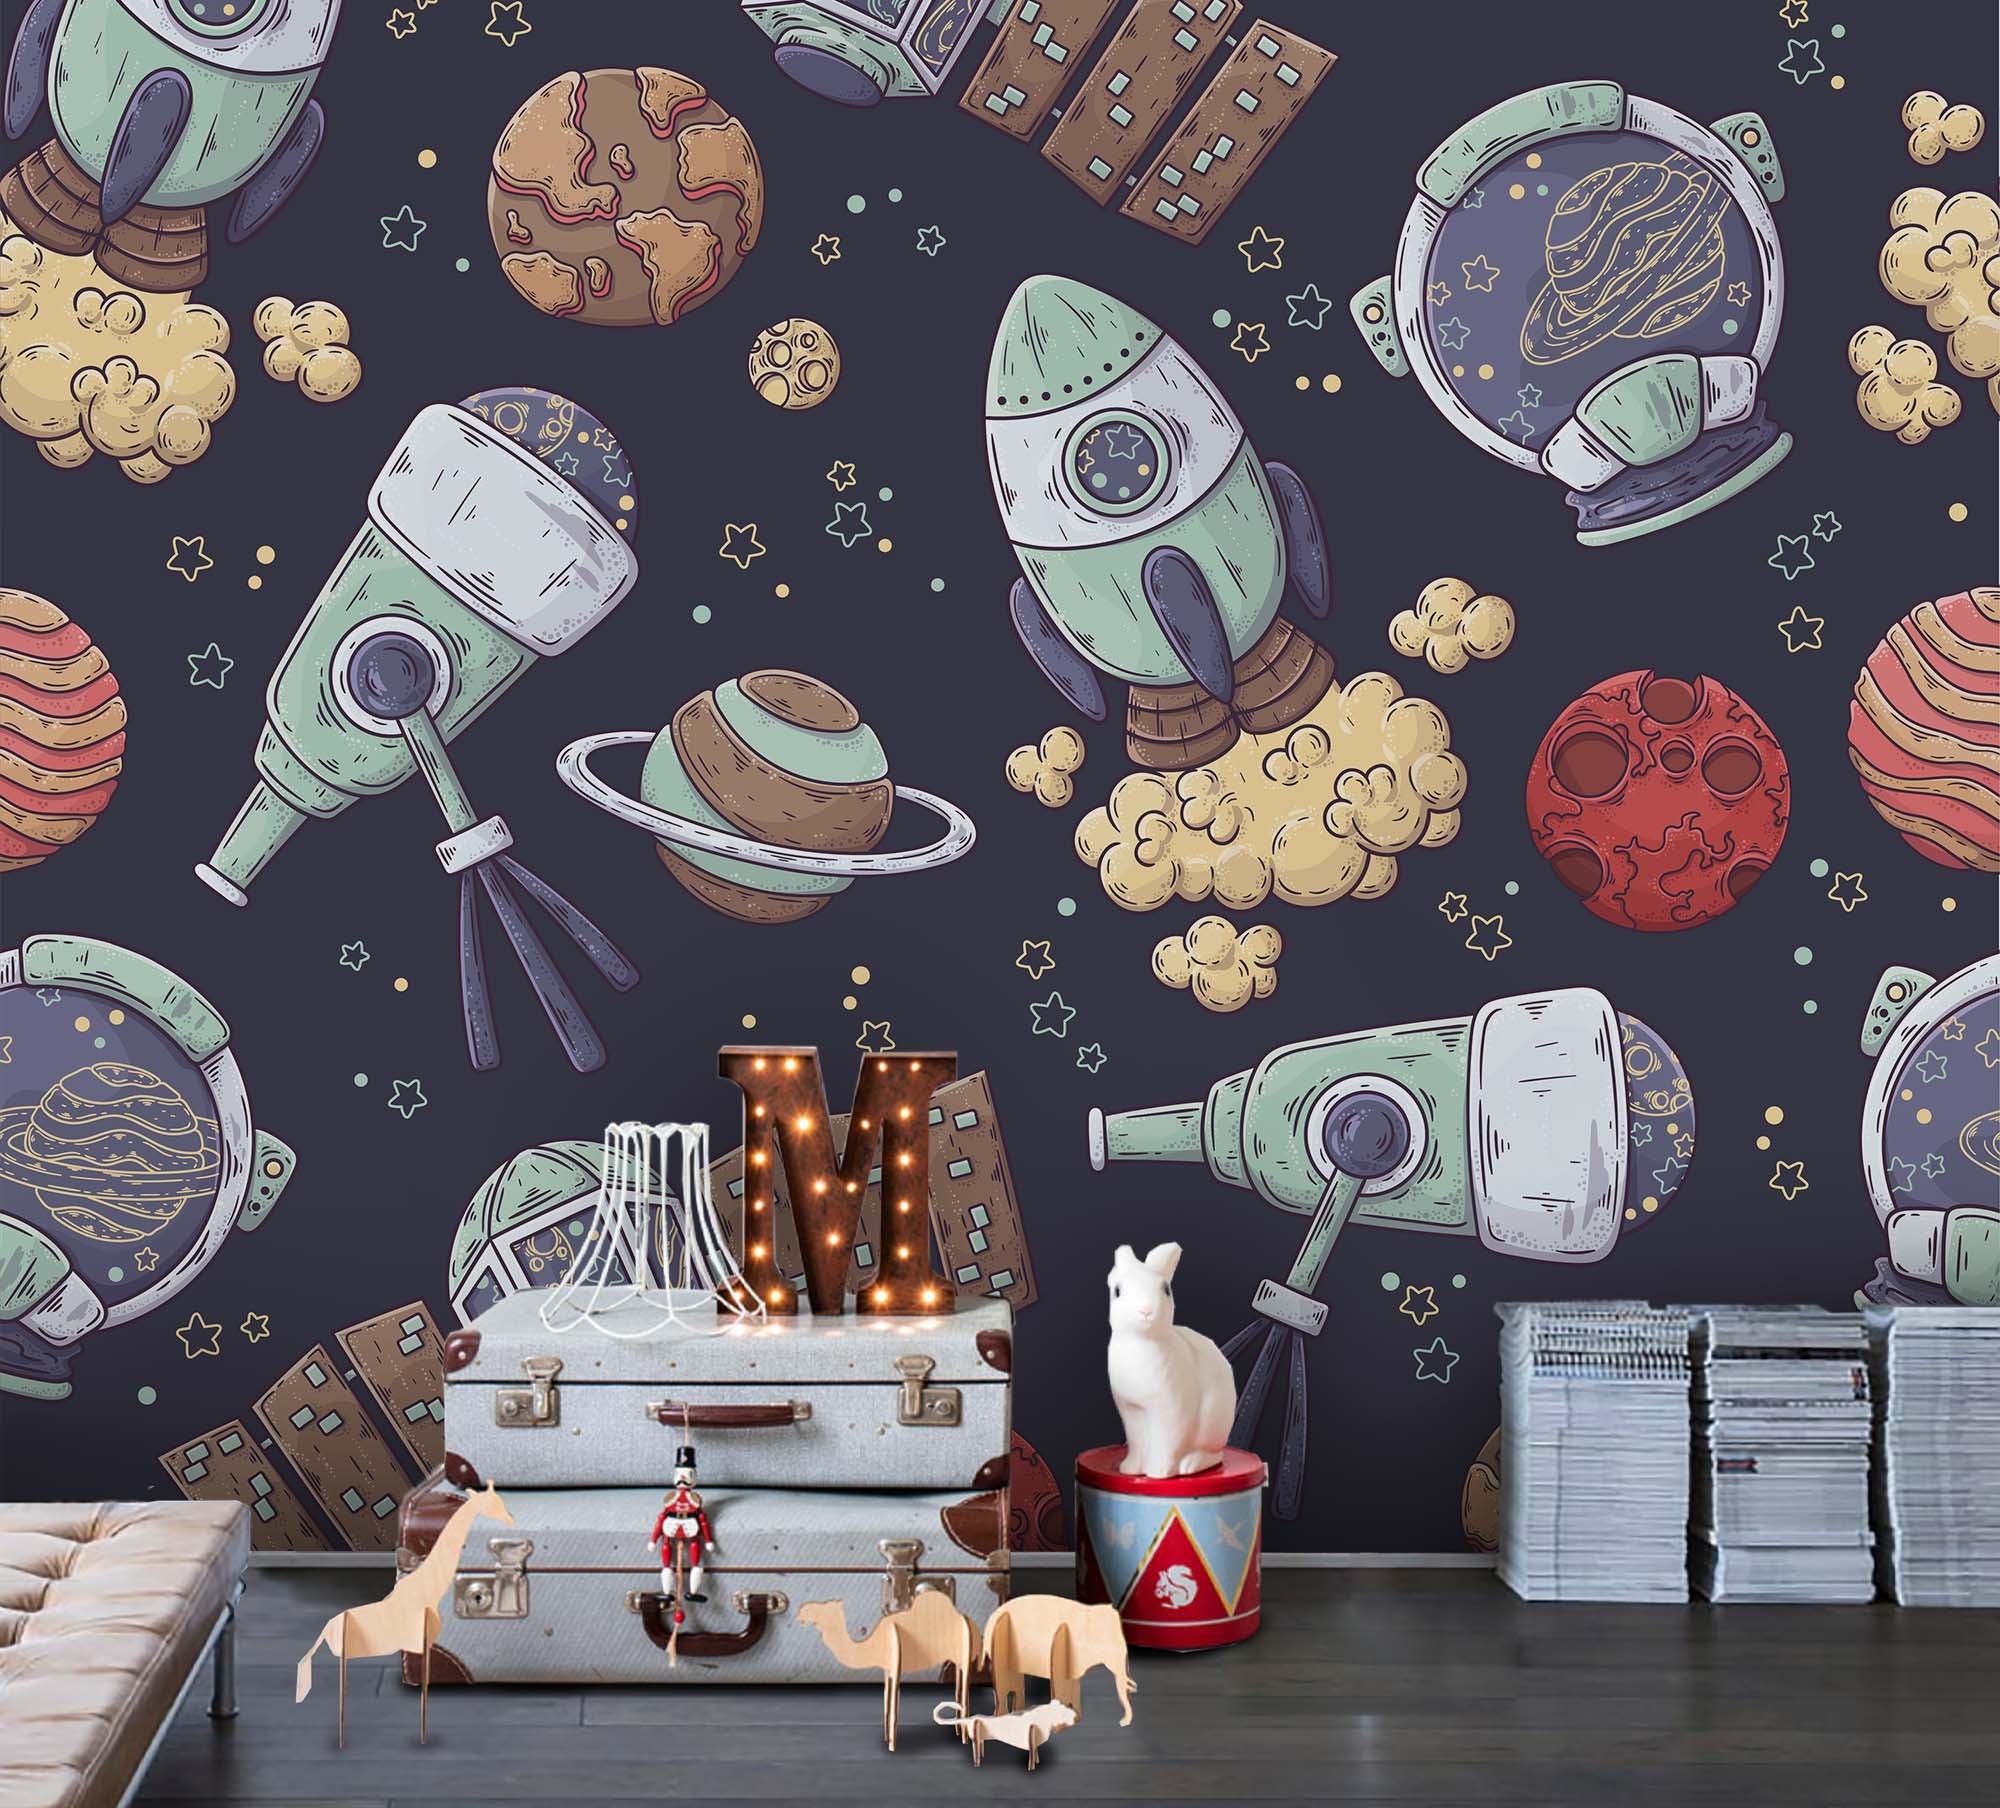 3D Cartoon Space Rocket Planet Wall Mural Wallpaper A204 LQH- Jess Art Decoration